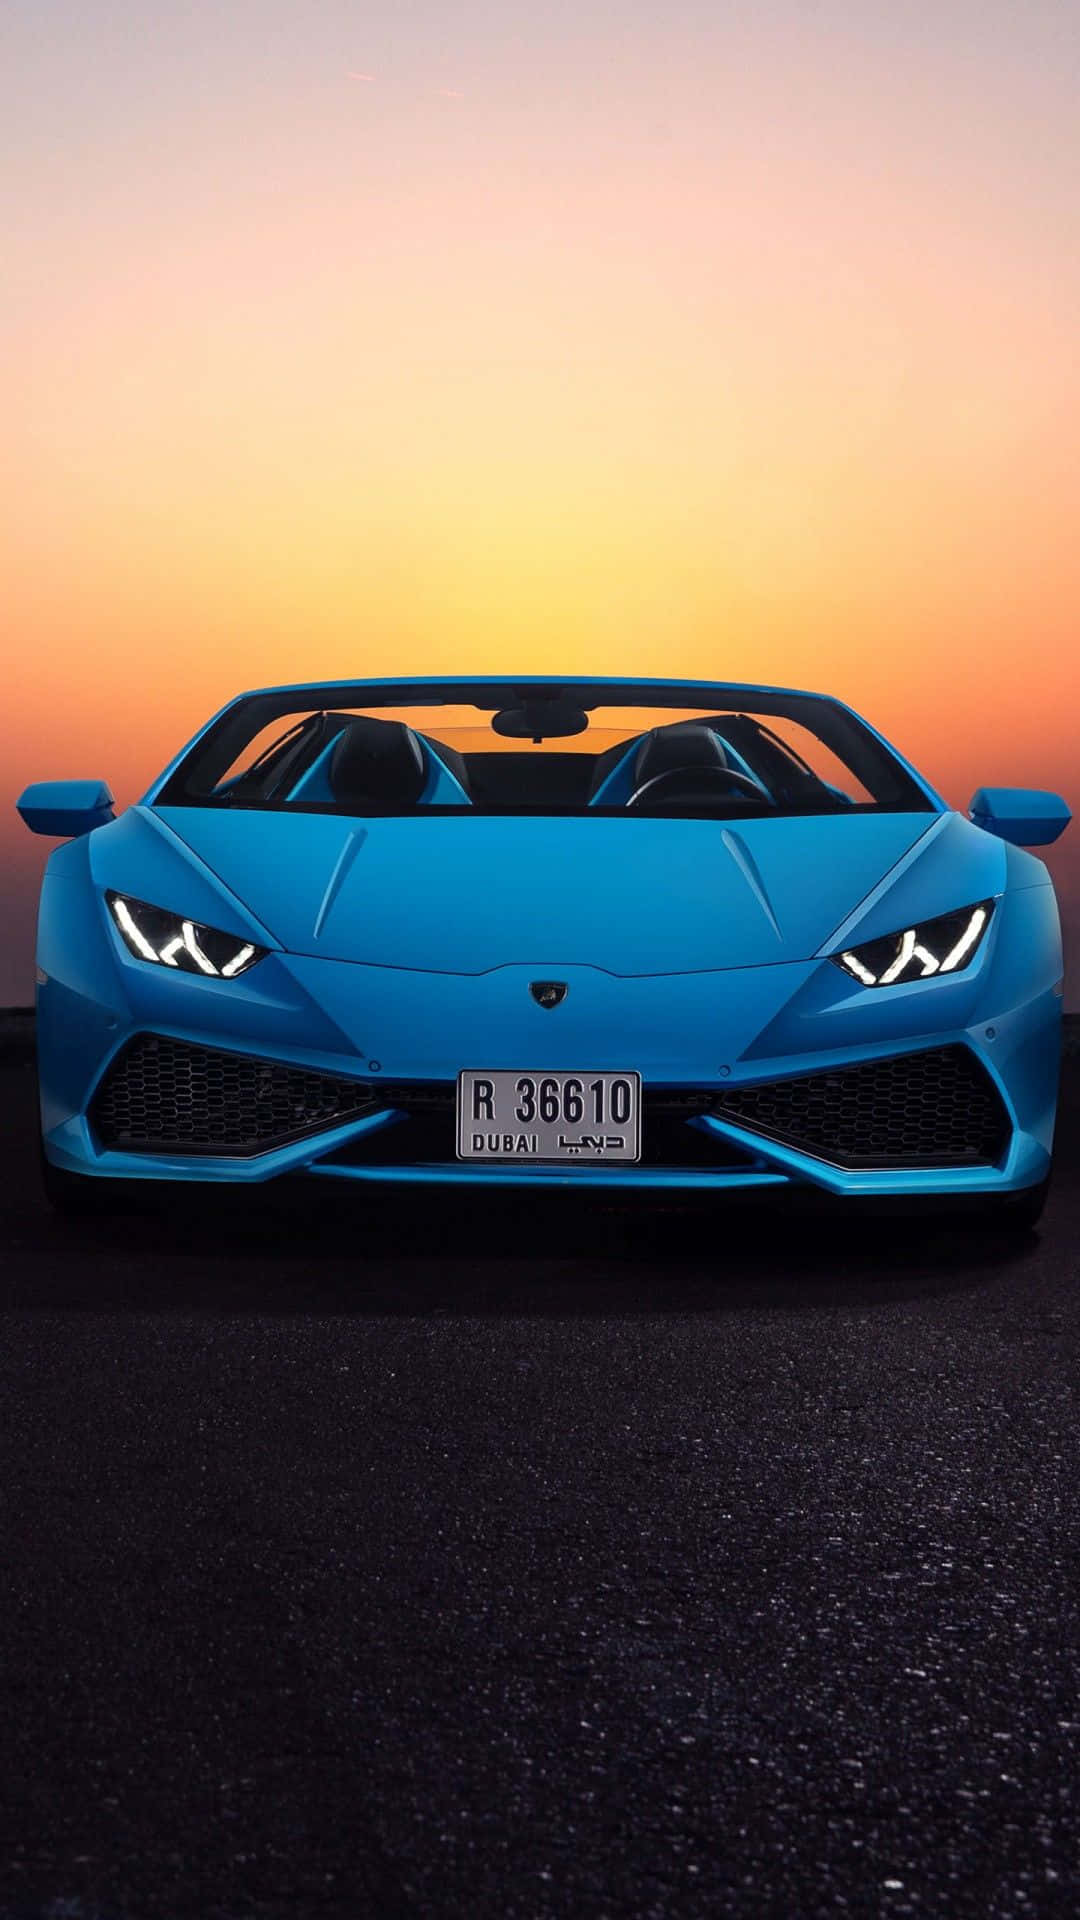 Bereitensie Sich Auf Einen Luxuriösen Ausflug Vor Mit Diesem Auffälligen Blauen Lamborghini! Wallpaper